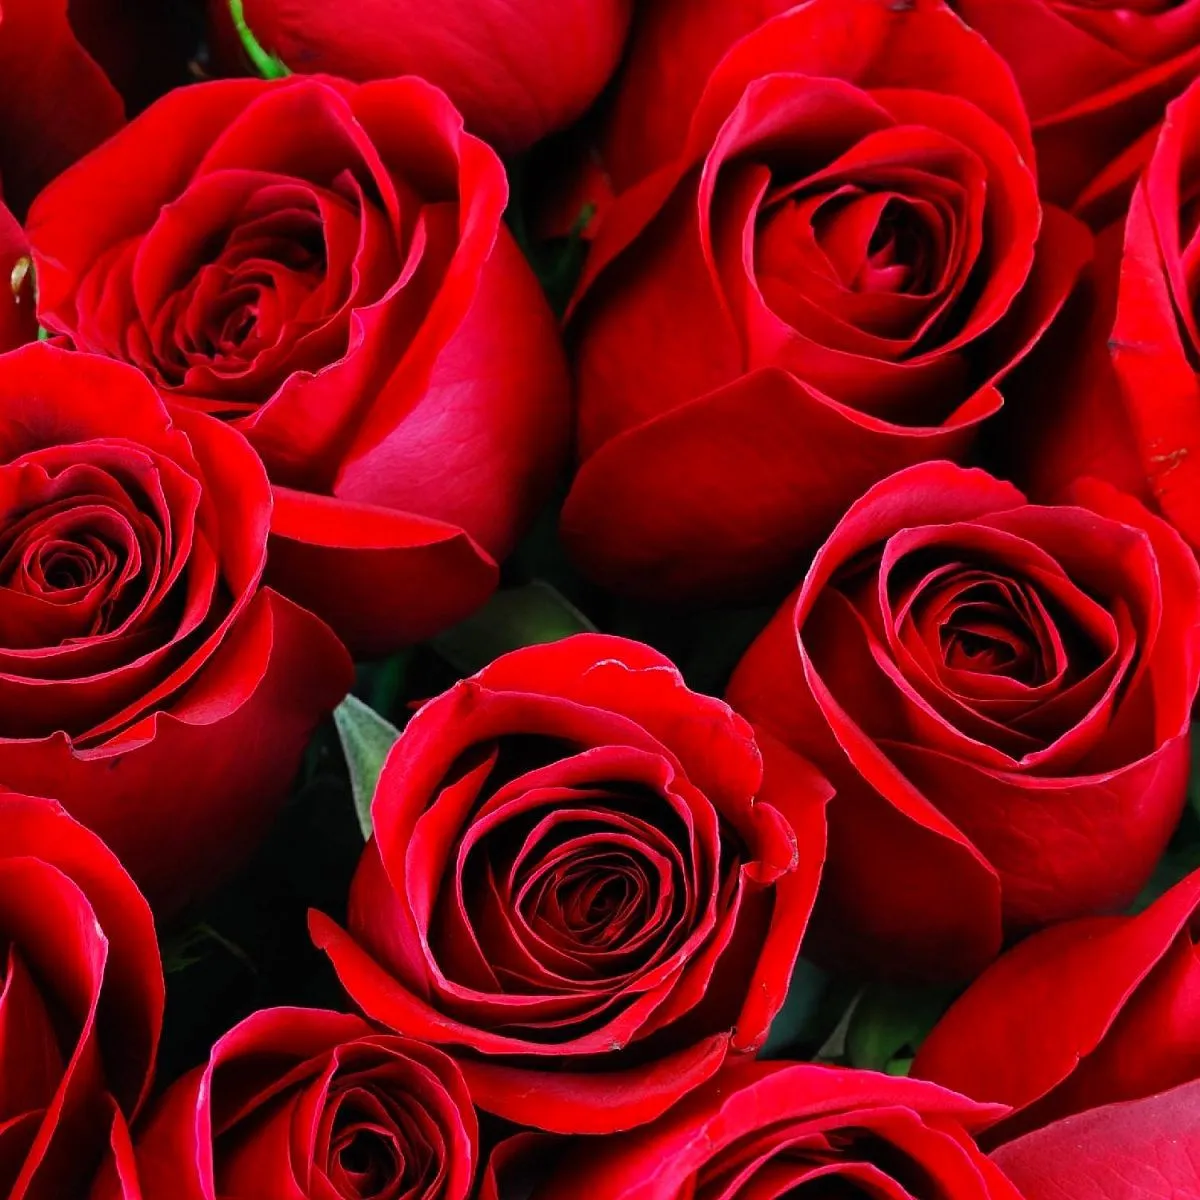 15 красных роз (70 см)